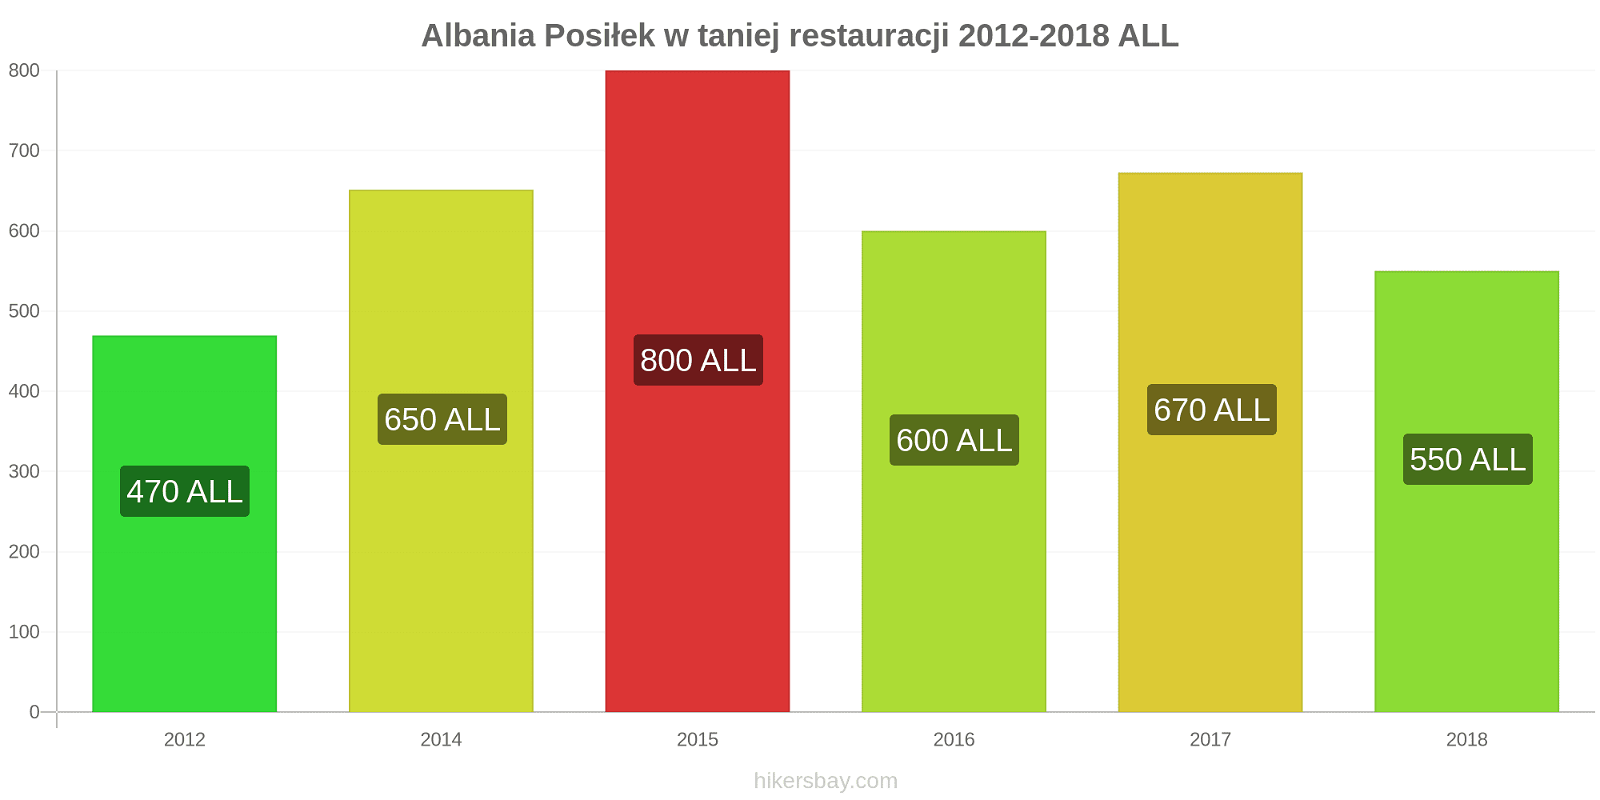 Albania zmiany cen Posiłek w taniej restauracji hikersbay.com